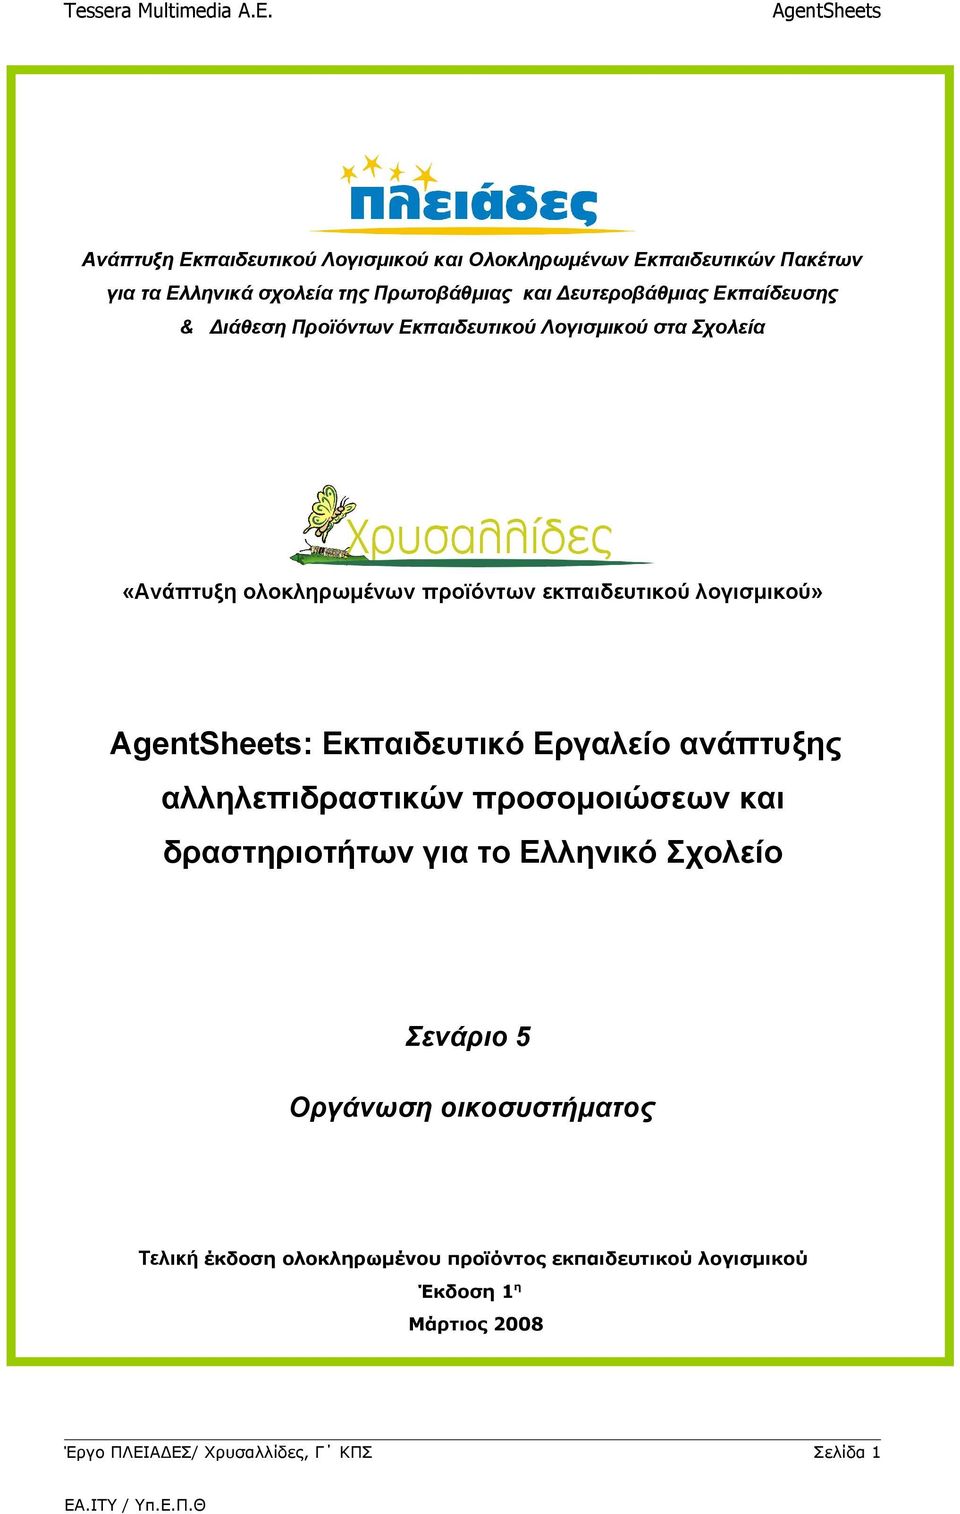 Εκπαιδευτικό Εργαλείο ανάπτυξης αλληλεπιδραστικών προσομοιώσεων και δραστηριοτήτων για το Ελληνικό Σχολείο Σενάριο 5 Οργάνωση